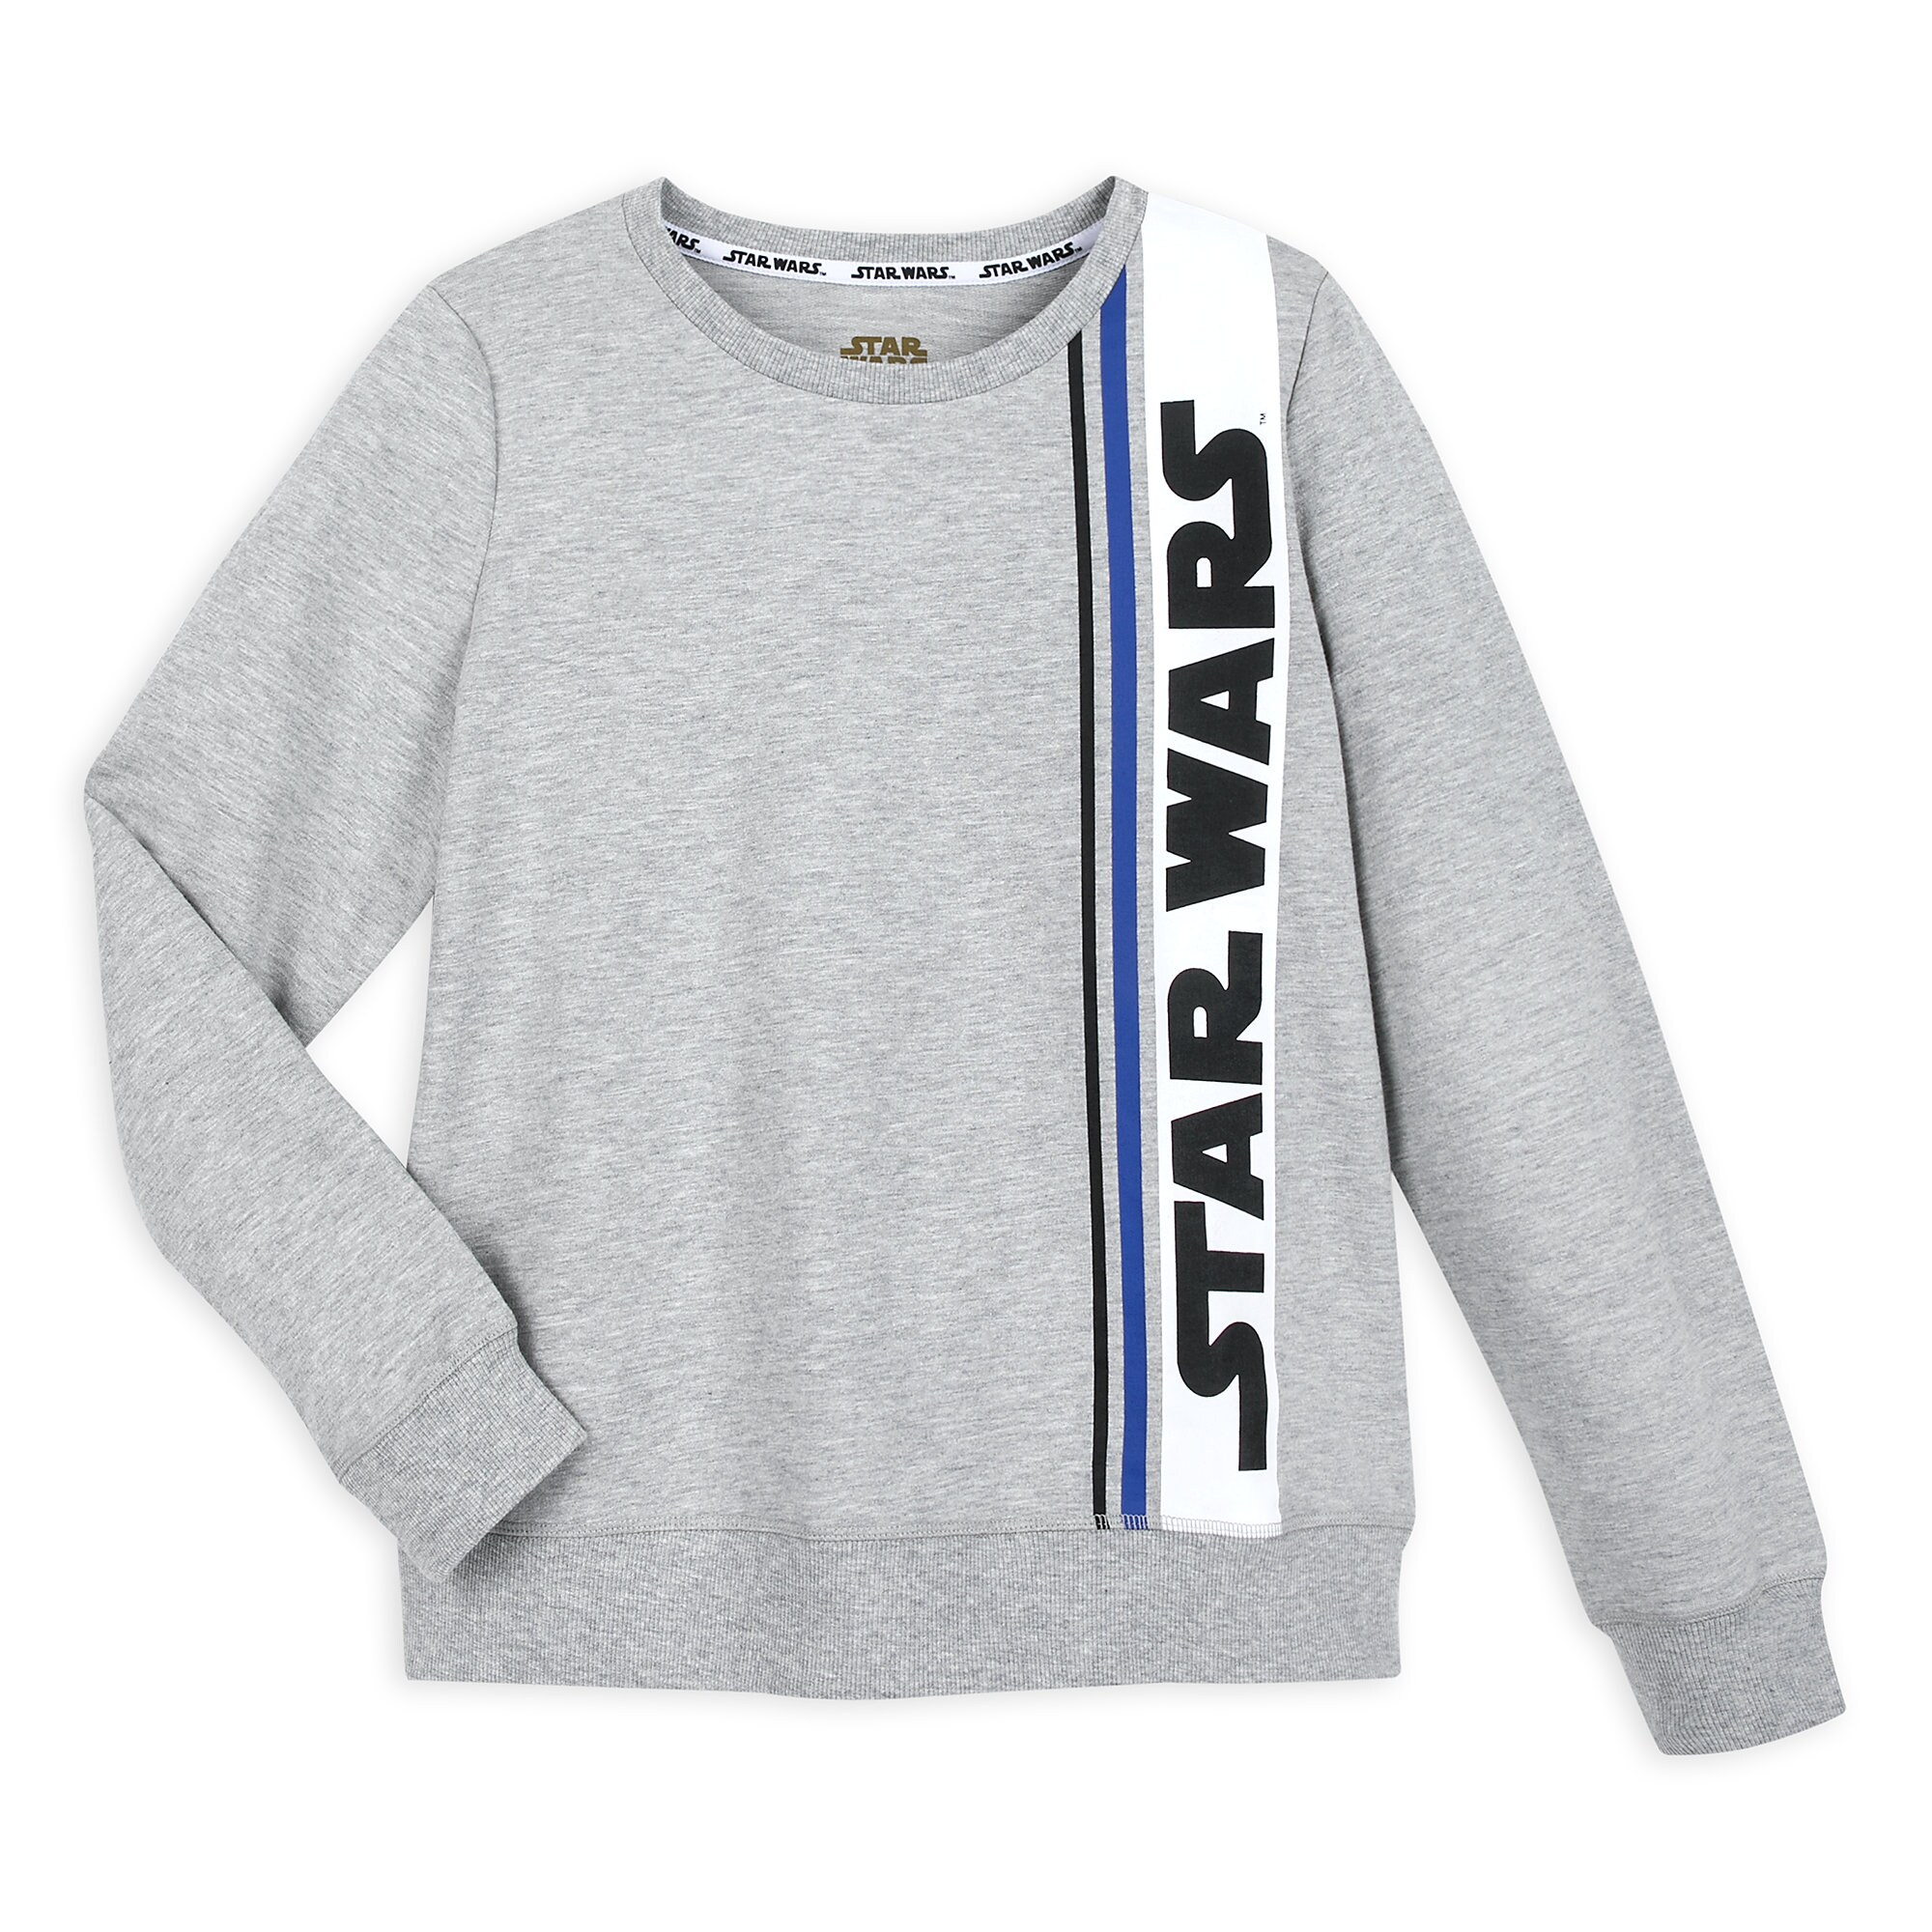 Star Wars Logo Sweatshirt for Women